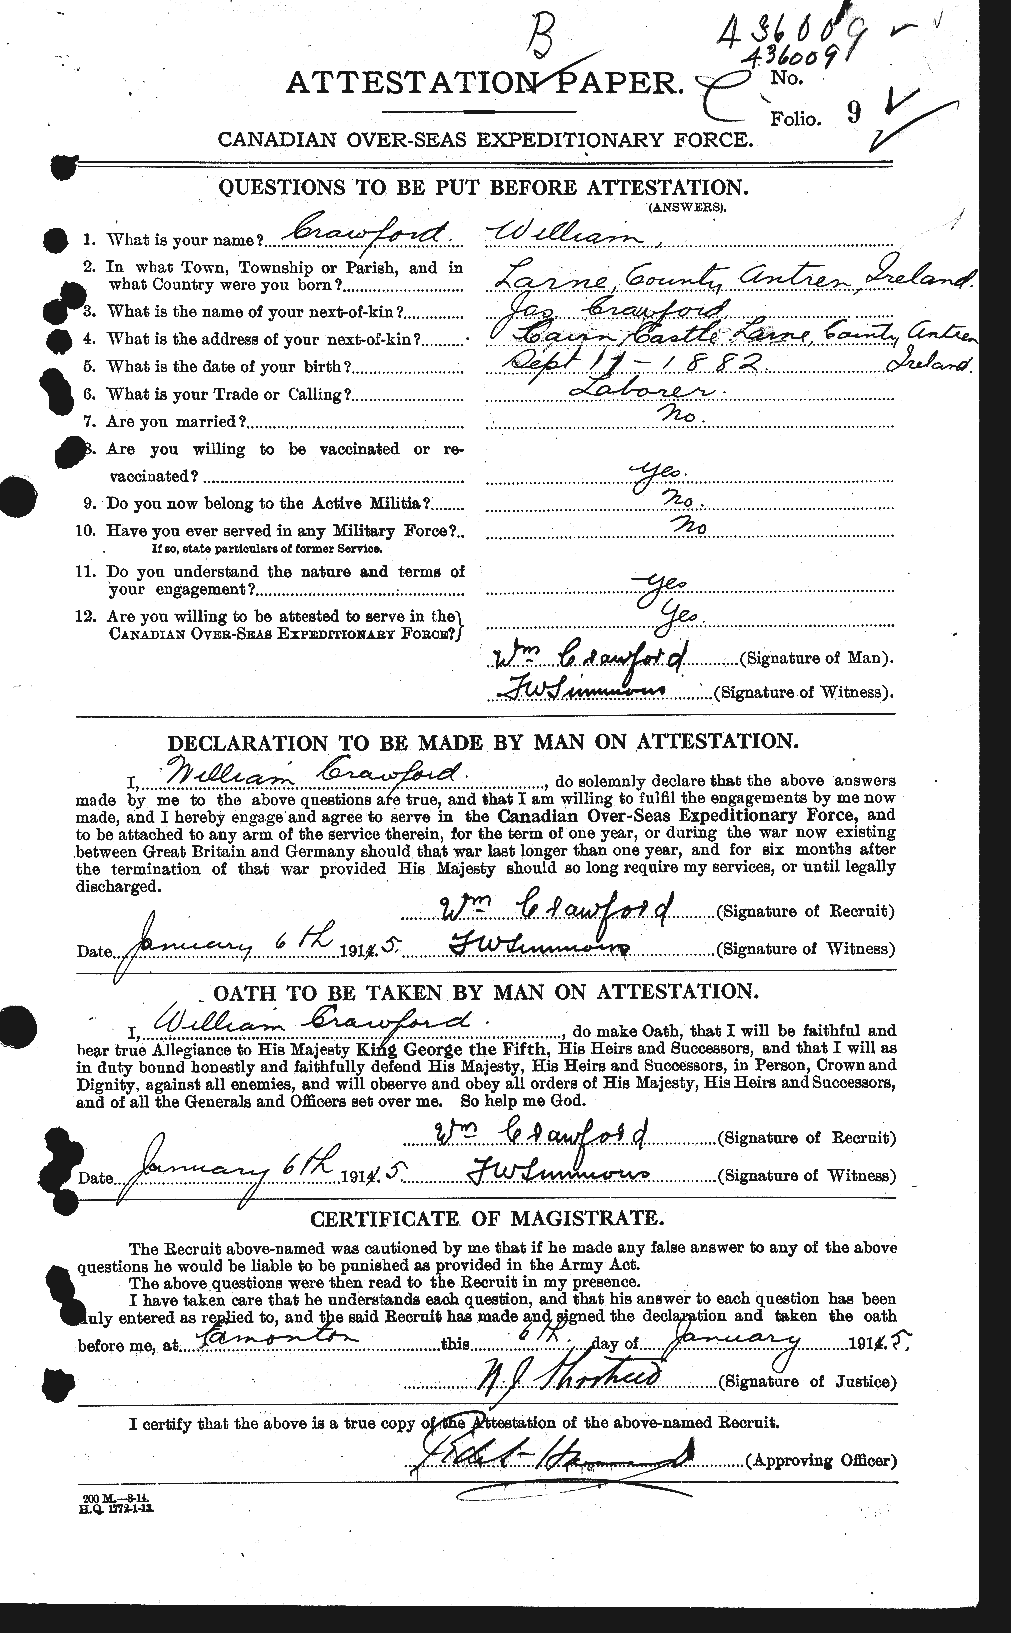 Dossiers du Personnel de la Première Guerre mondiale - CEC 061156a